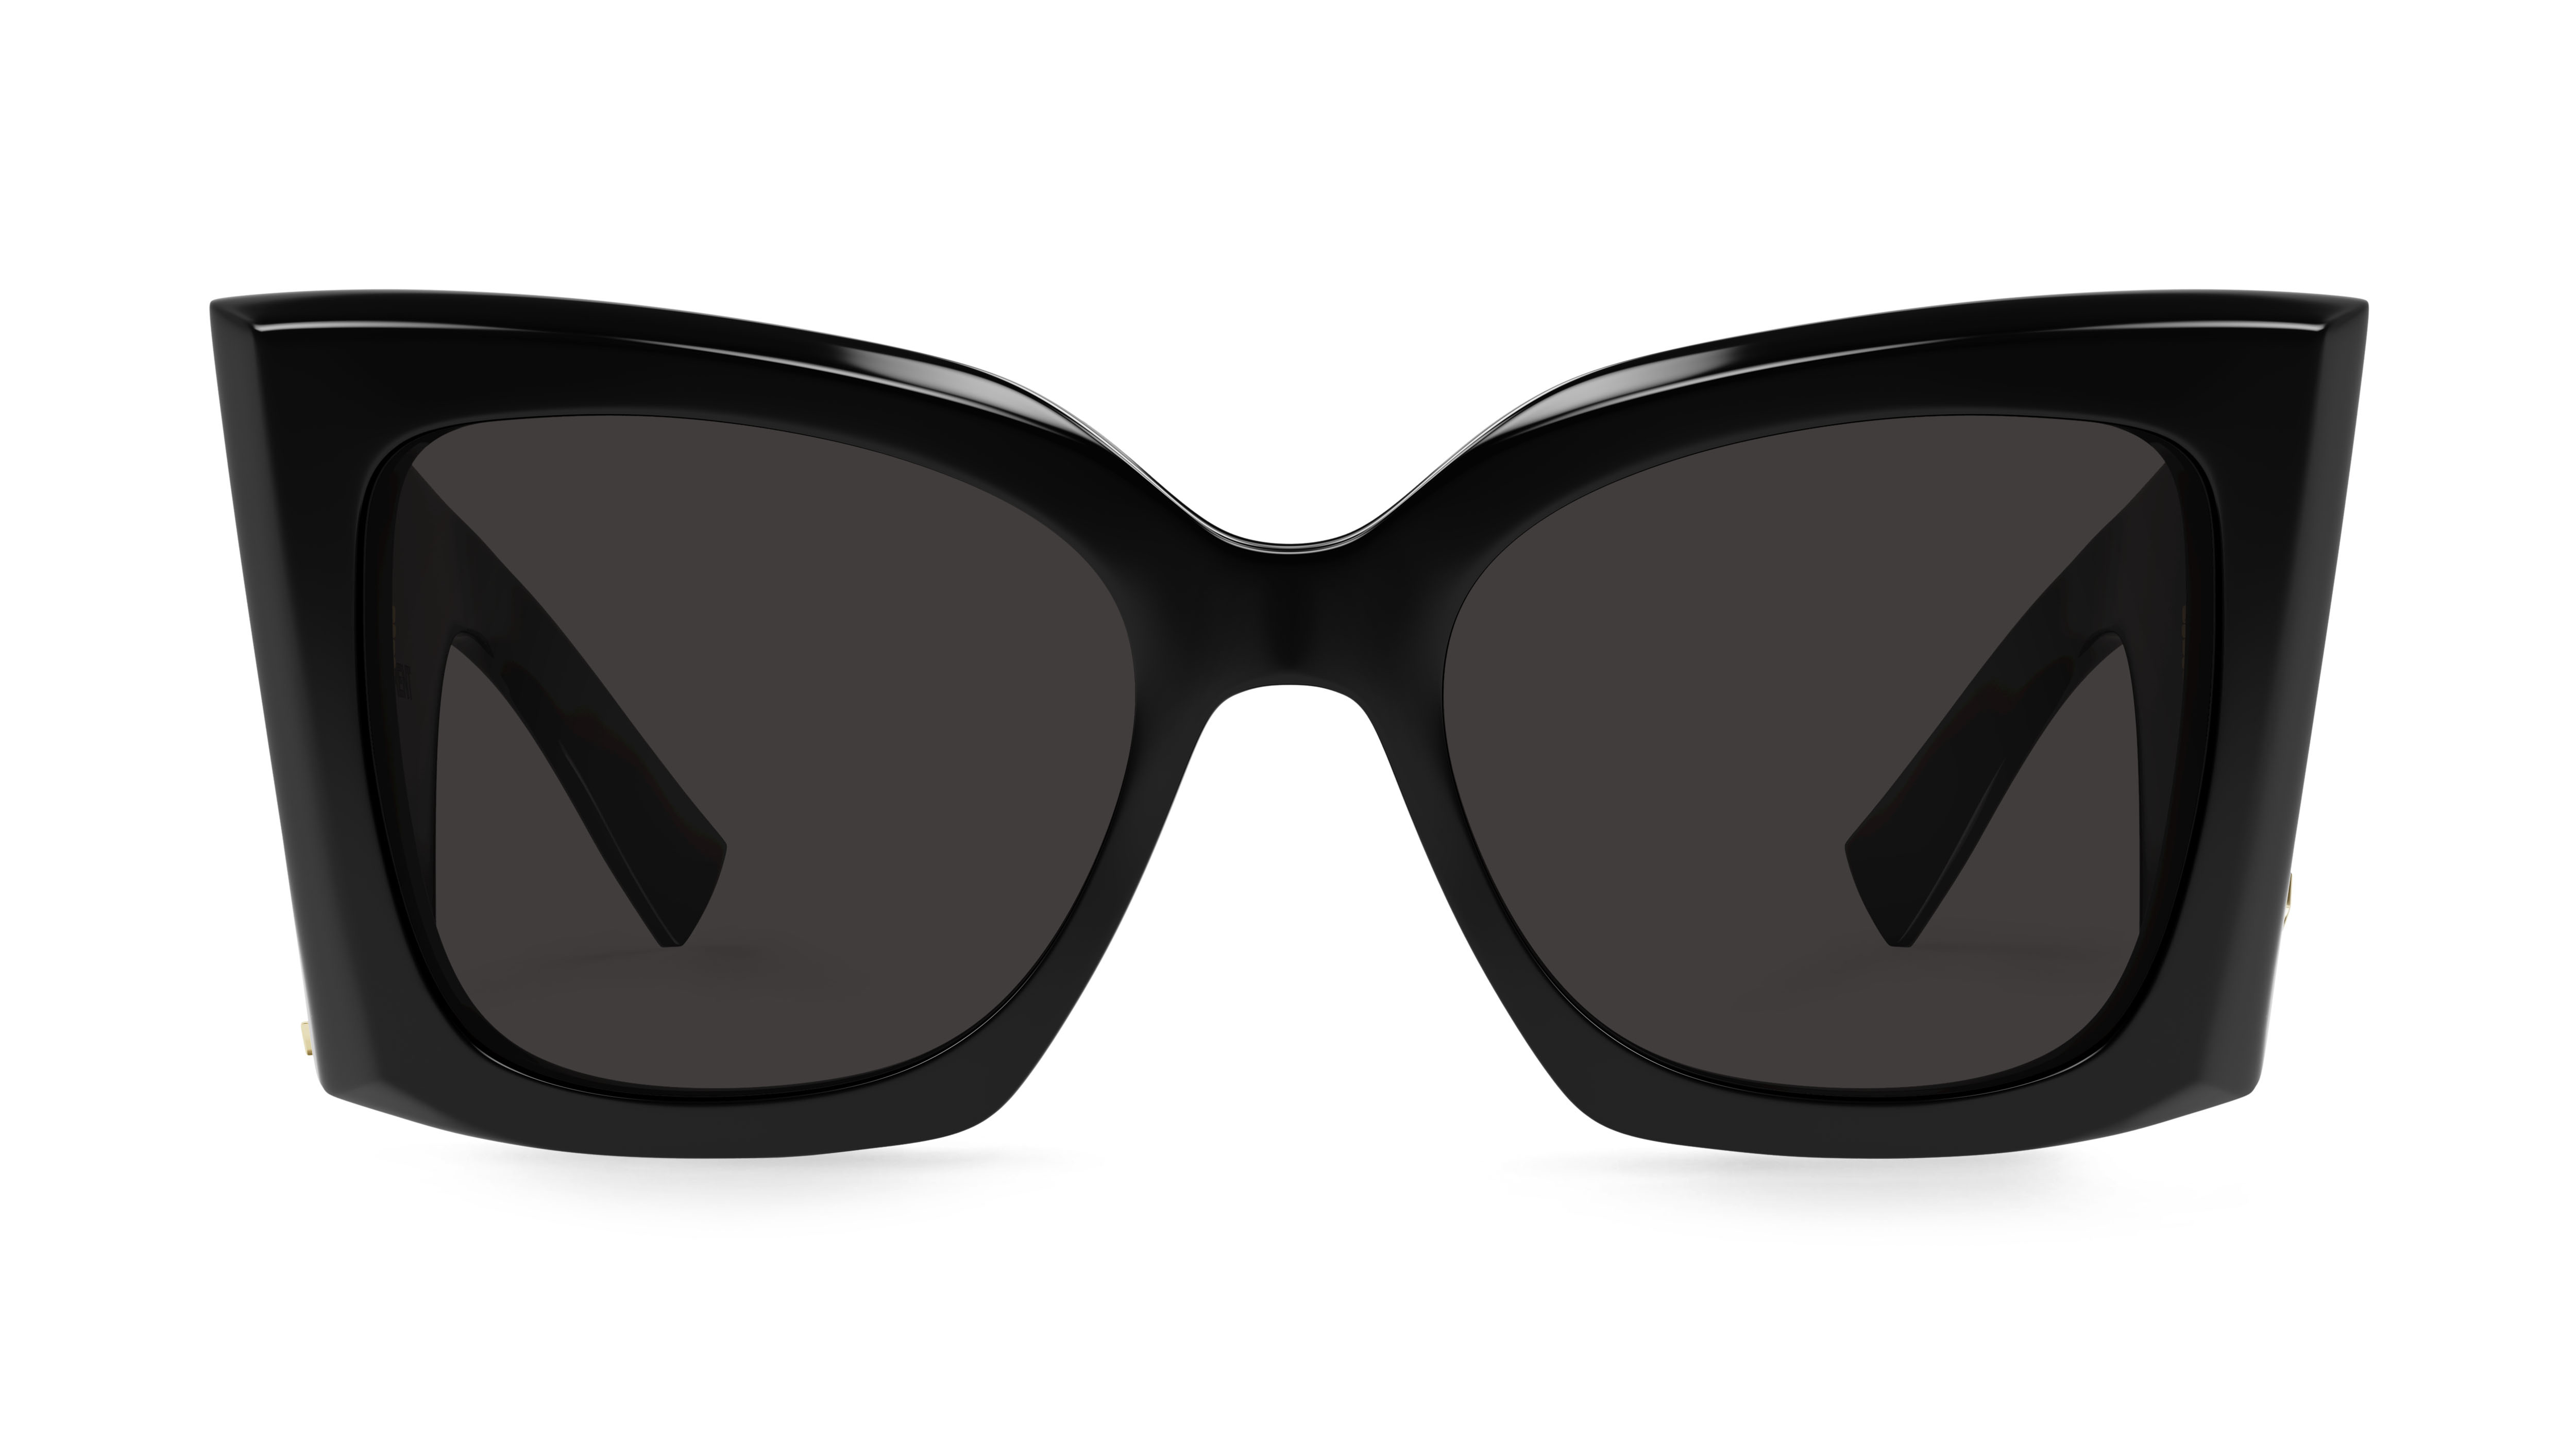 YSL Sunglasses  Ysl sunglasses, Fashion, Sunglasses